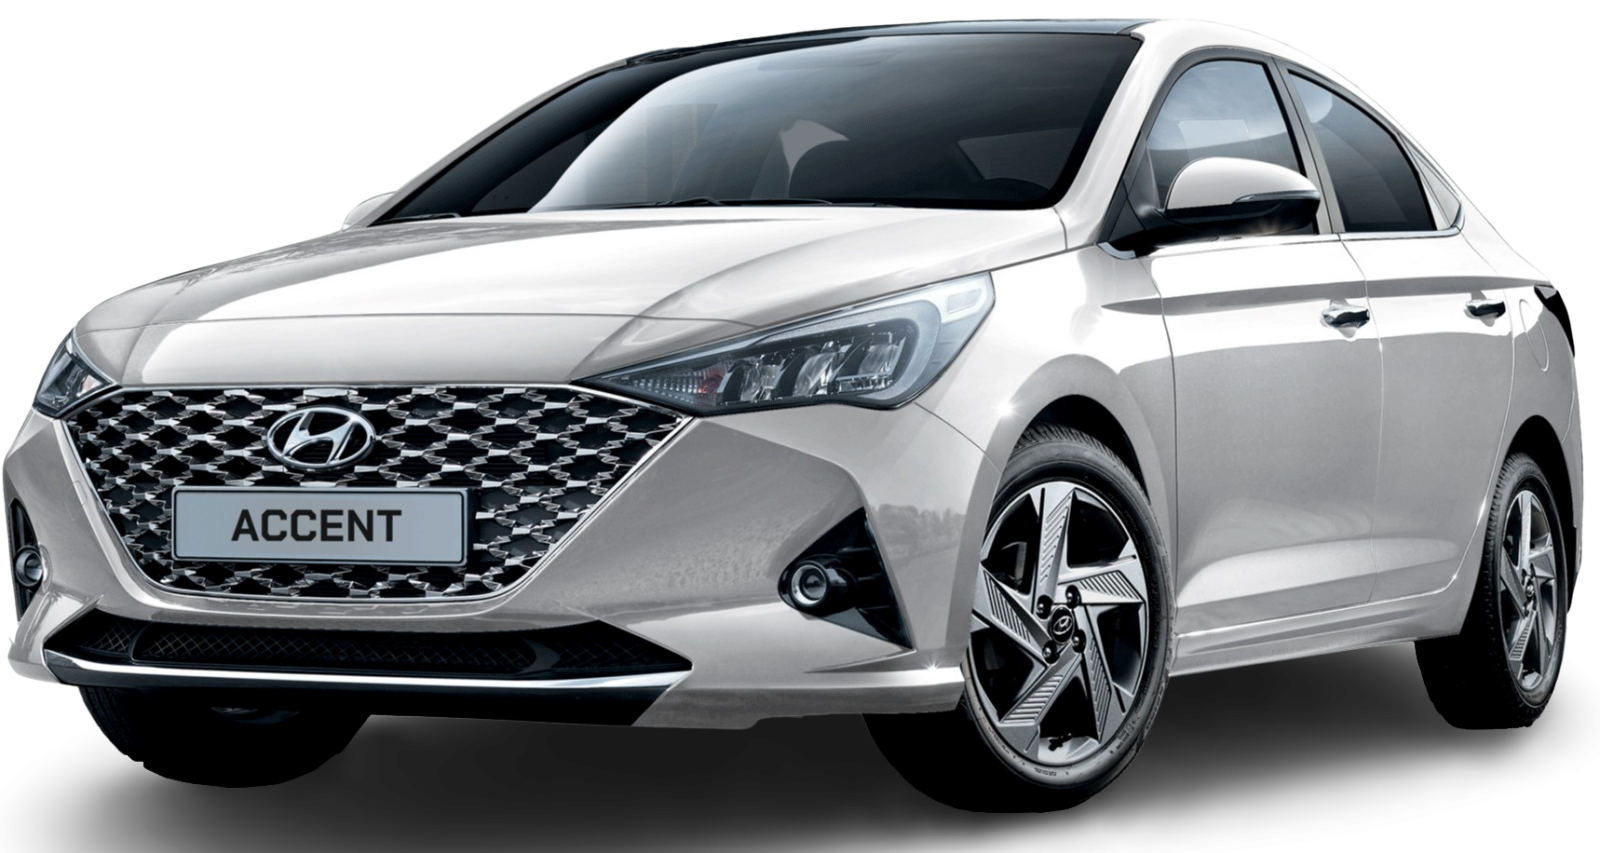 Anh Dai Dien Hyundai Accent Tinbanxe(1) 